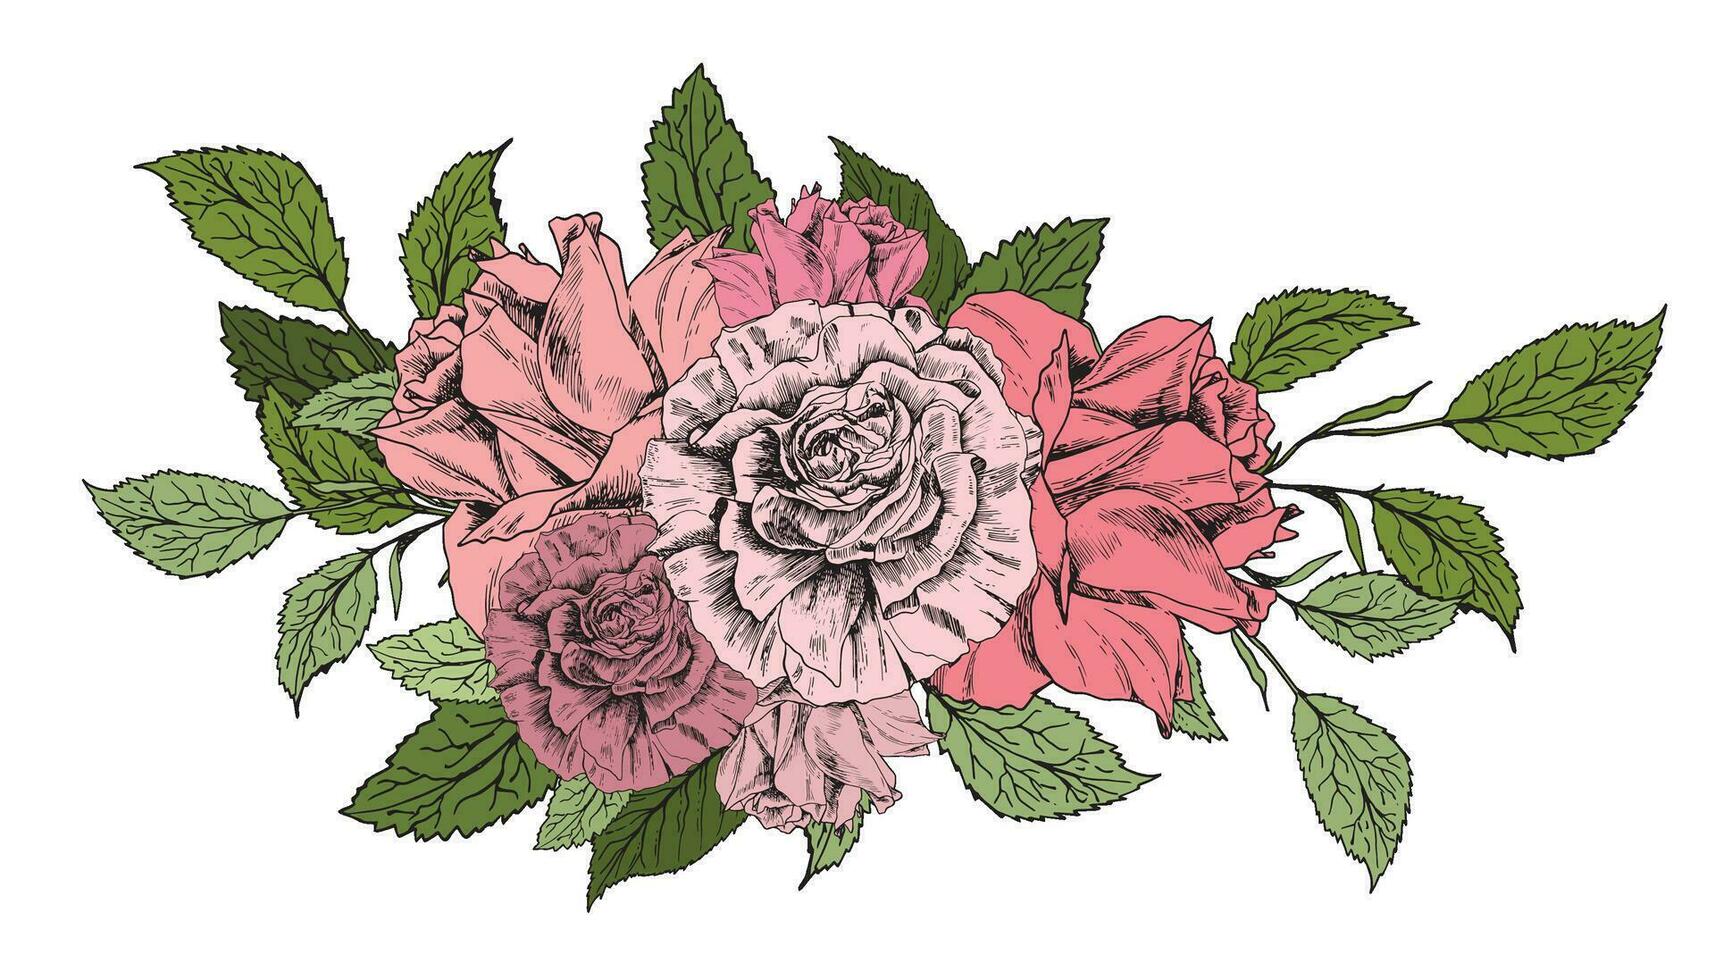 Kompositionen von Blume Anordnungen. Rosa blass Rosen, verschiedene Blumen, Grün Blätter. asiatisch Butterblume. Hand gezeichnet skizzieren. zum drucken, Design, Paket, Flyer, Stoff vektor